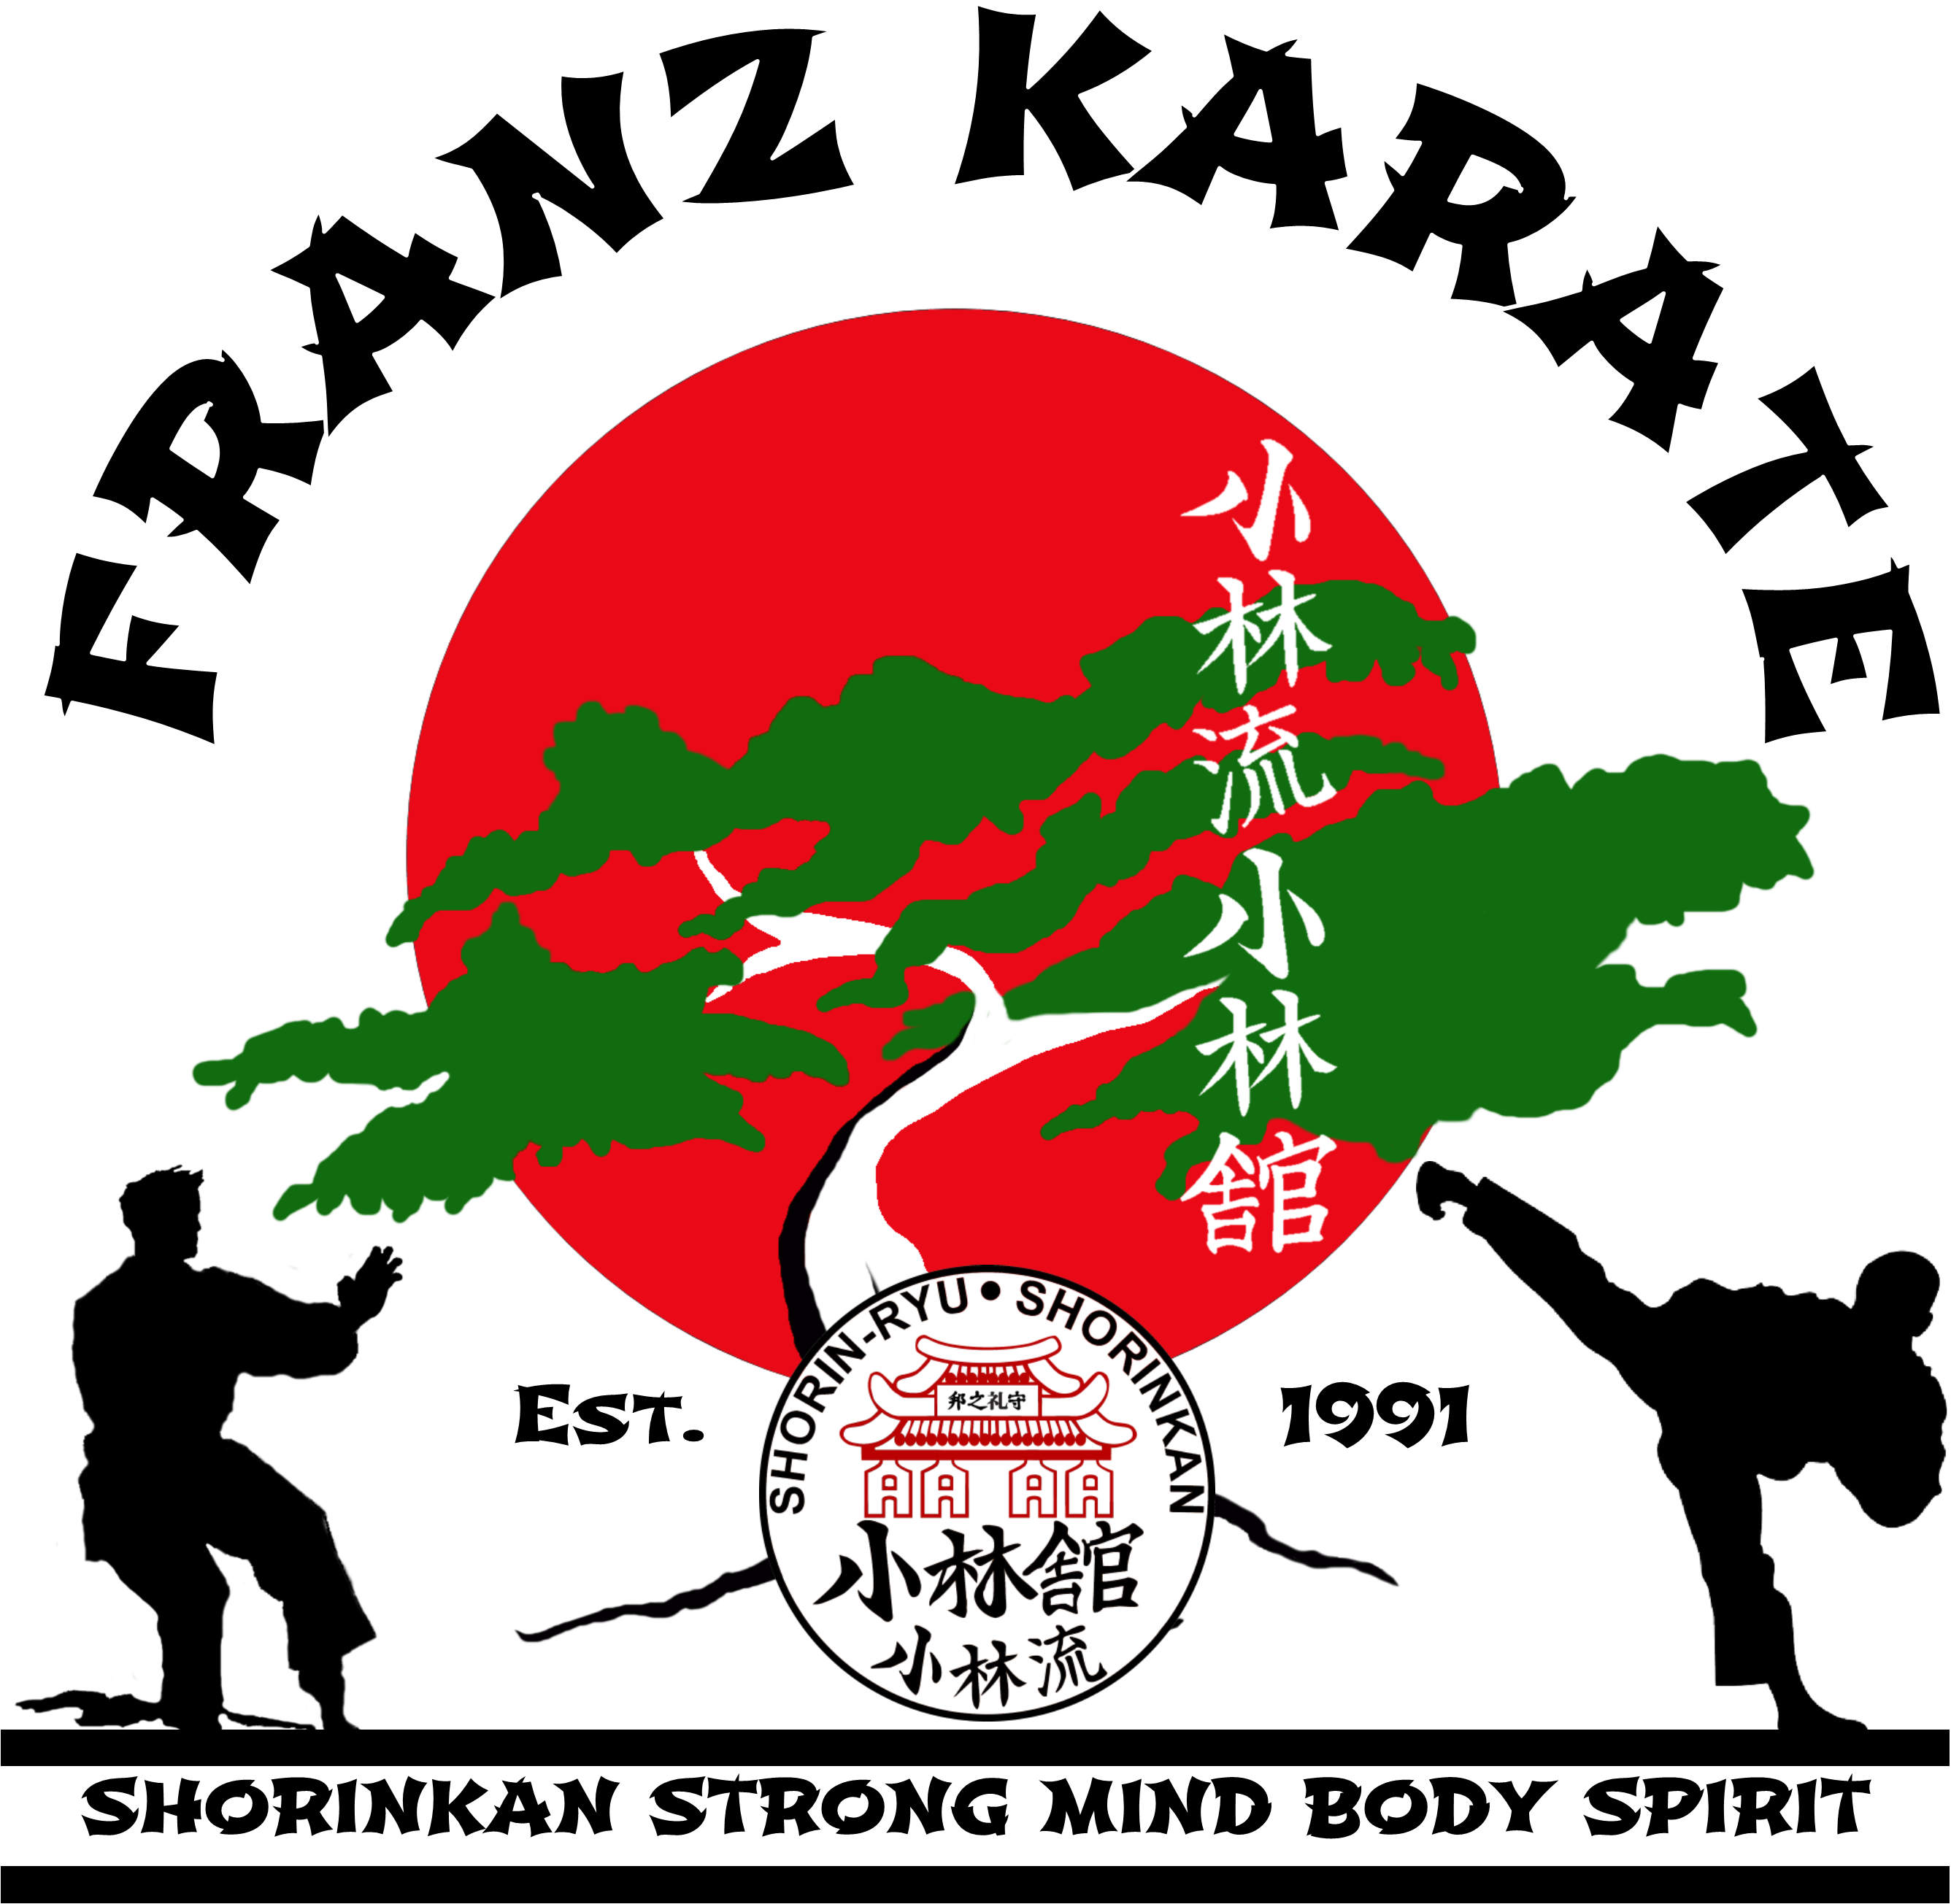 Steven Franz - Franz Karate logo